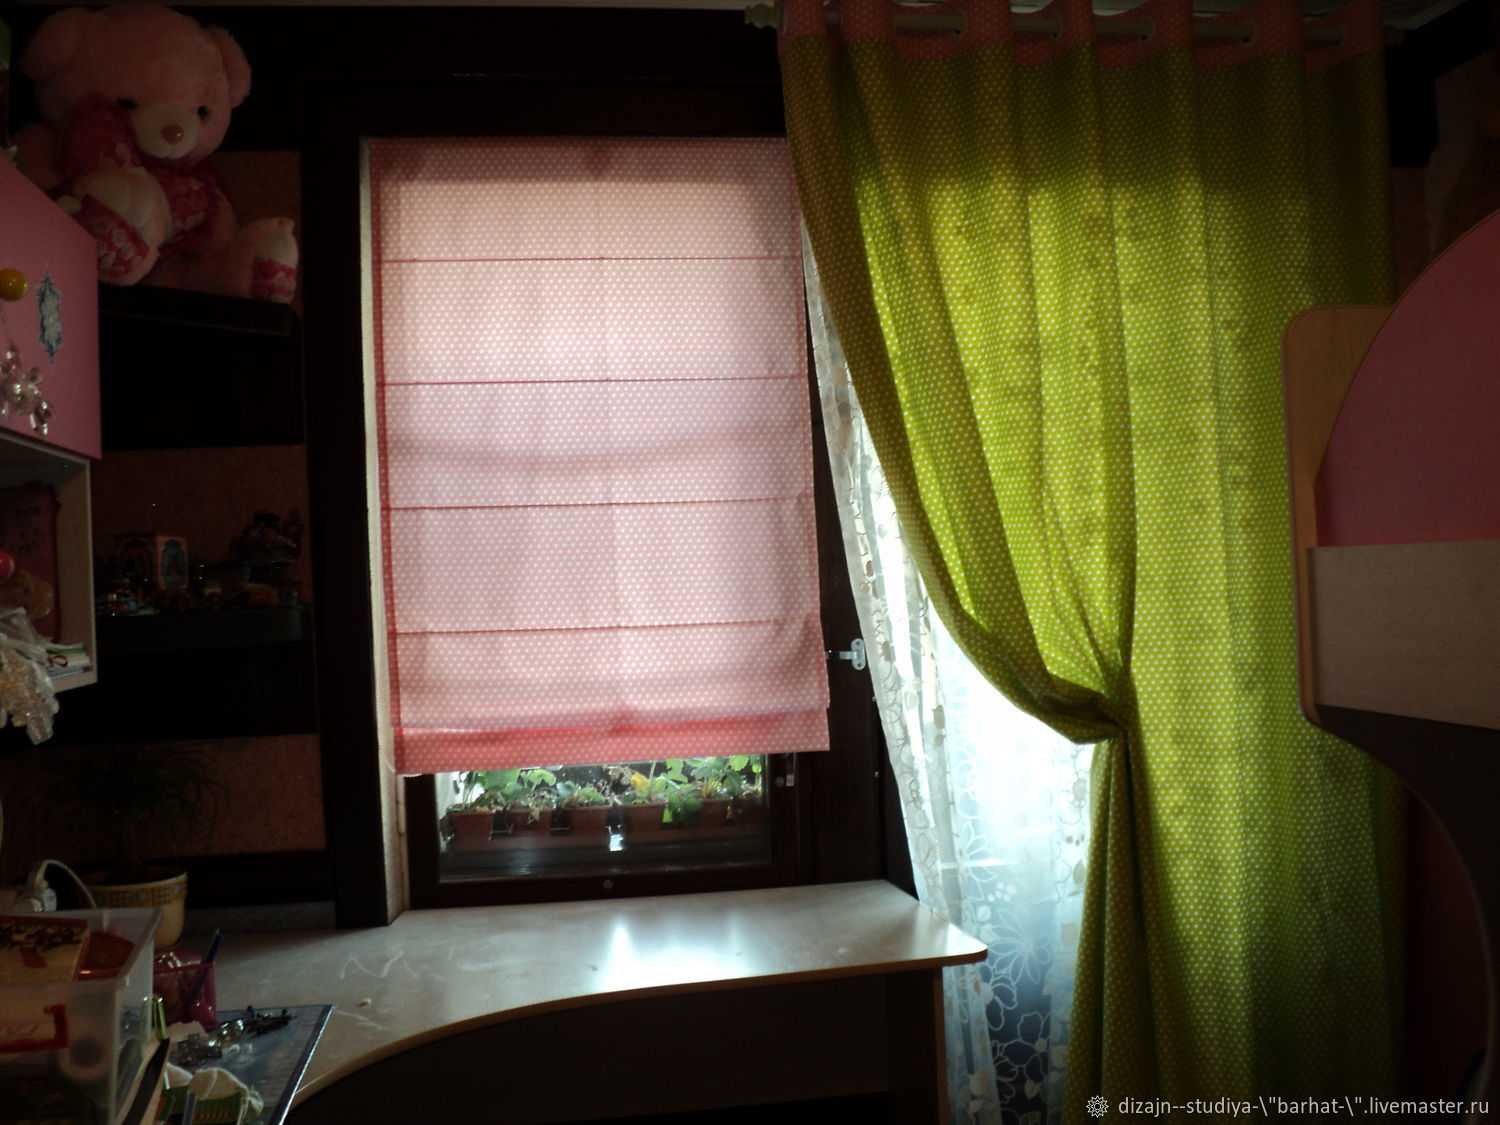 Римская штора в детскую комнату для девочки или мальчика, фото красивых решений.